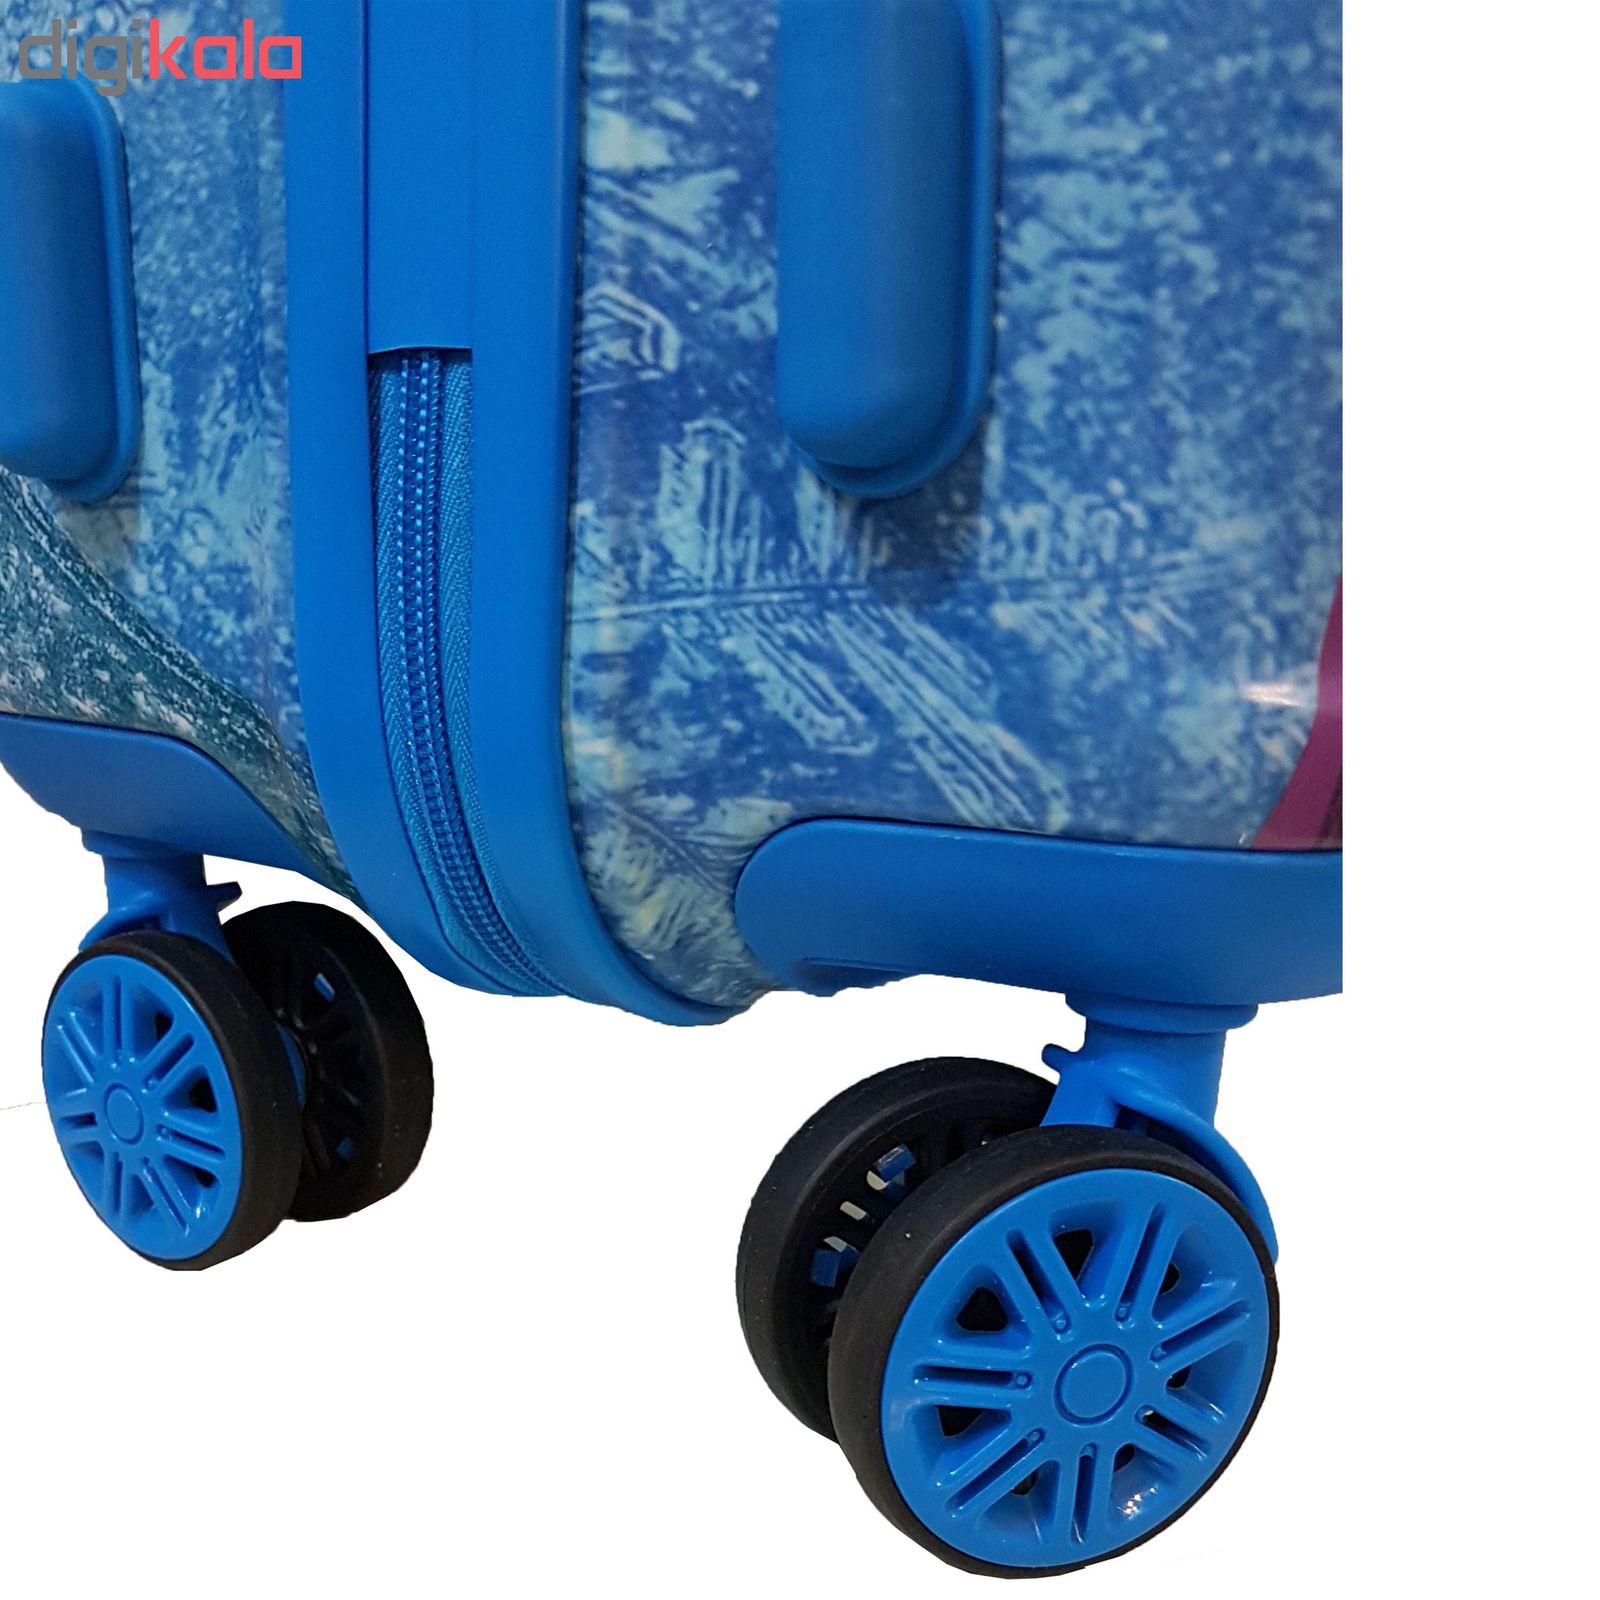 چمدان کودک 20 اینچ مدل trancformers